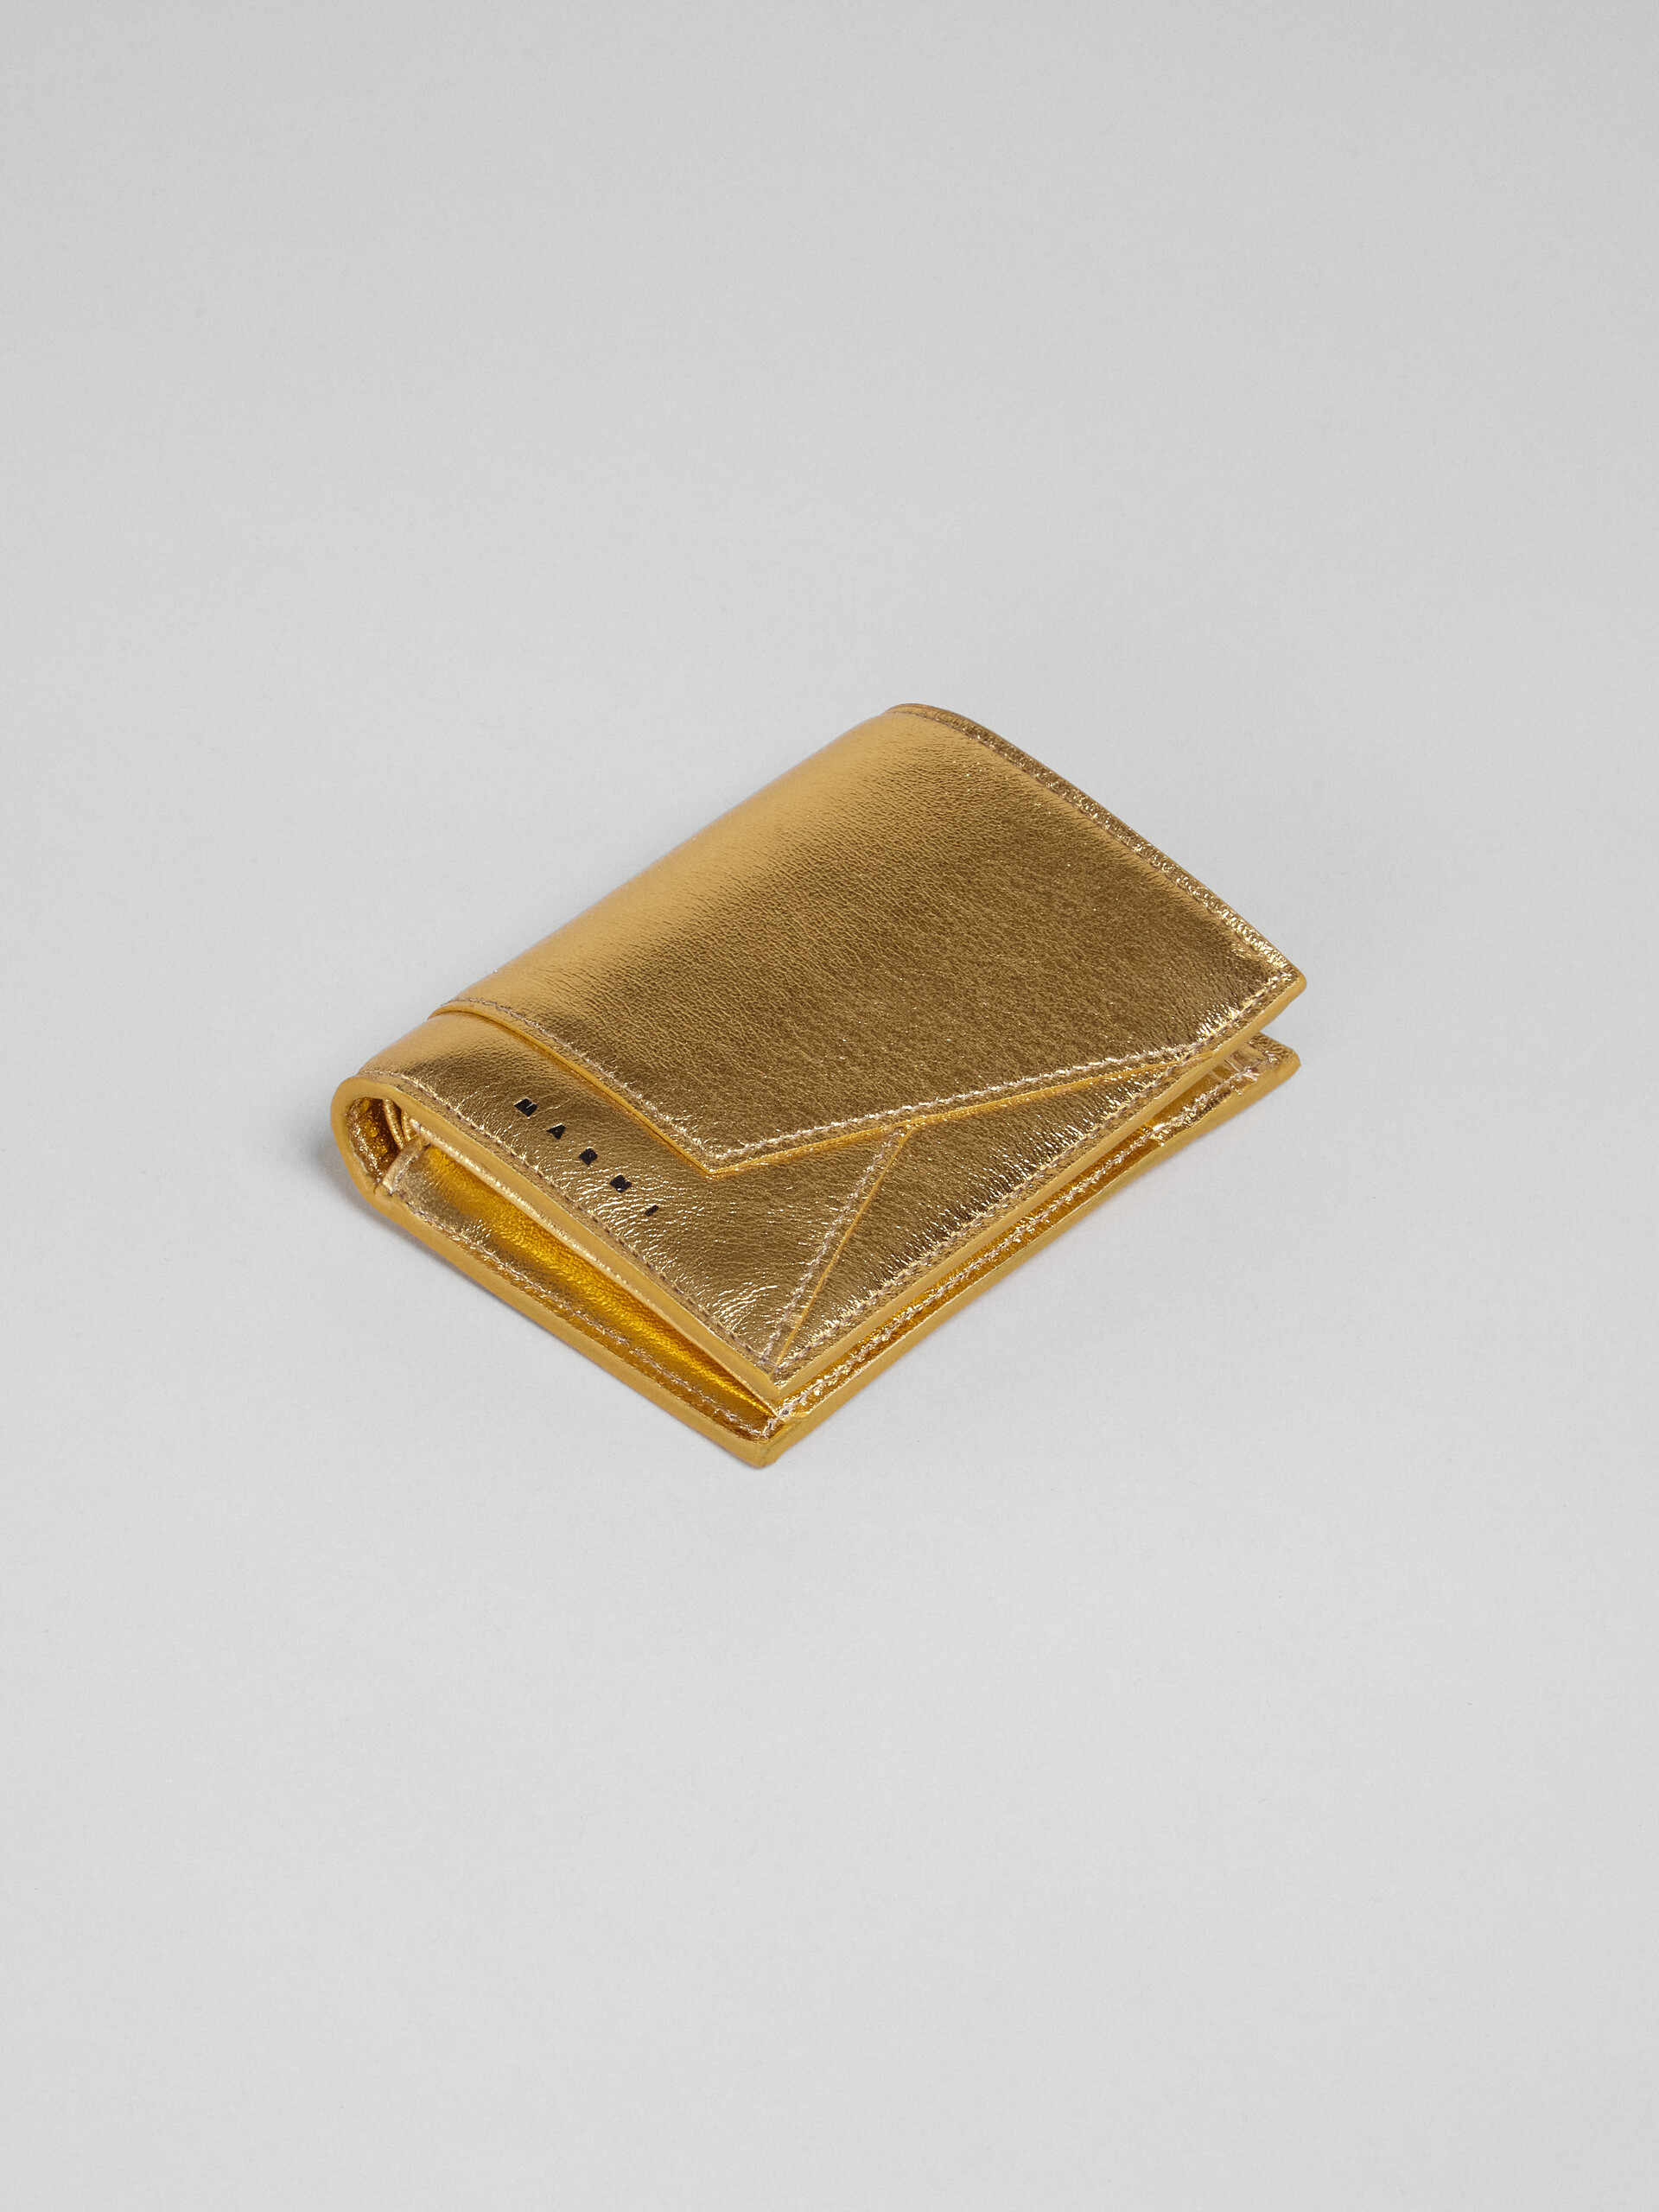 ゴールドメタリック調 ナッパレザー二つ折りウォレット - 財布 - Image 5